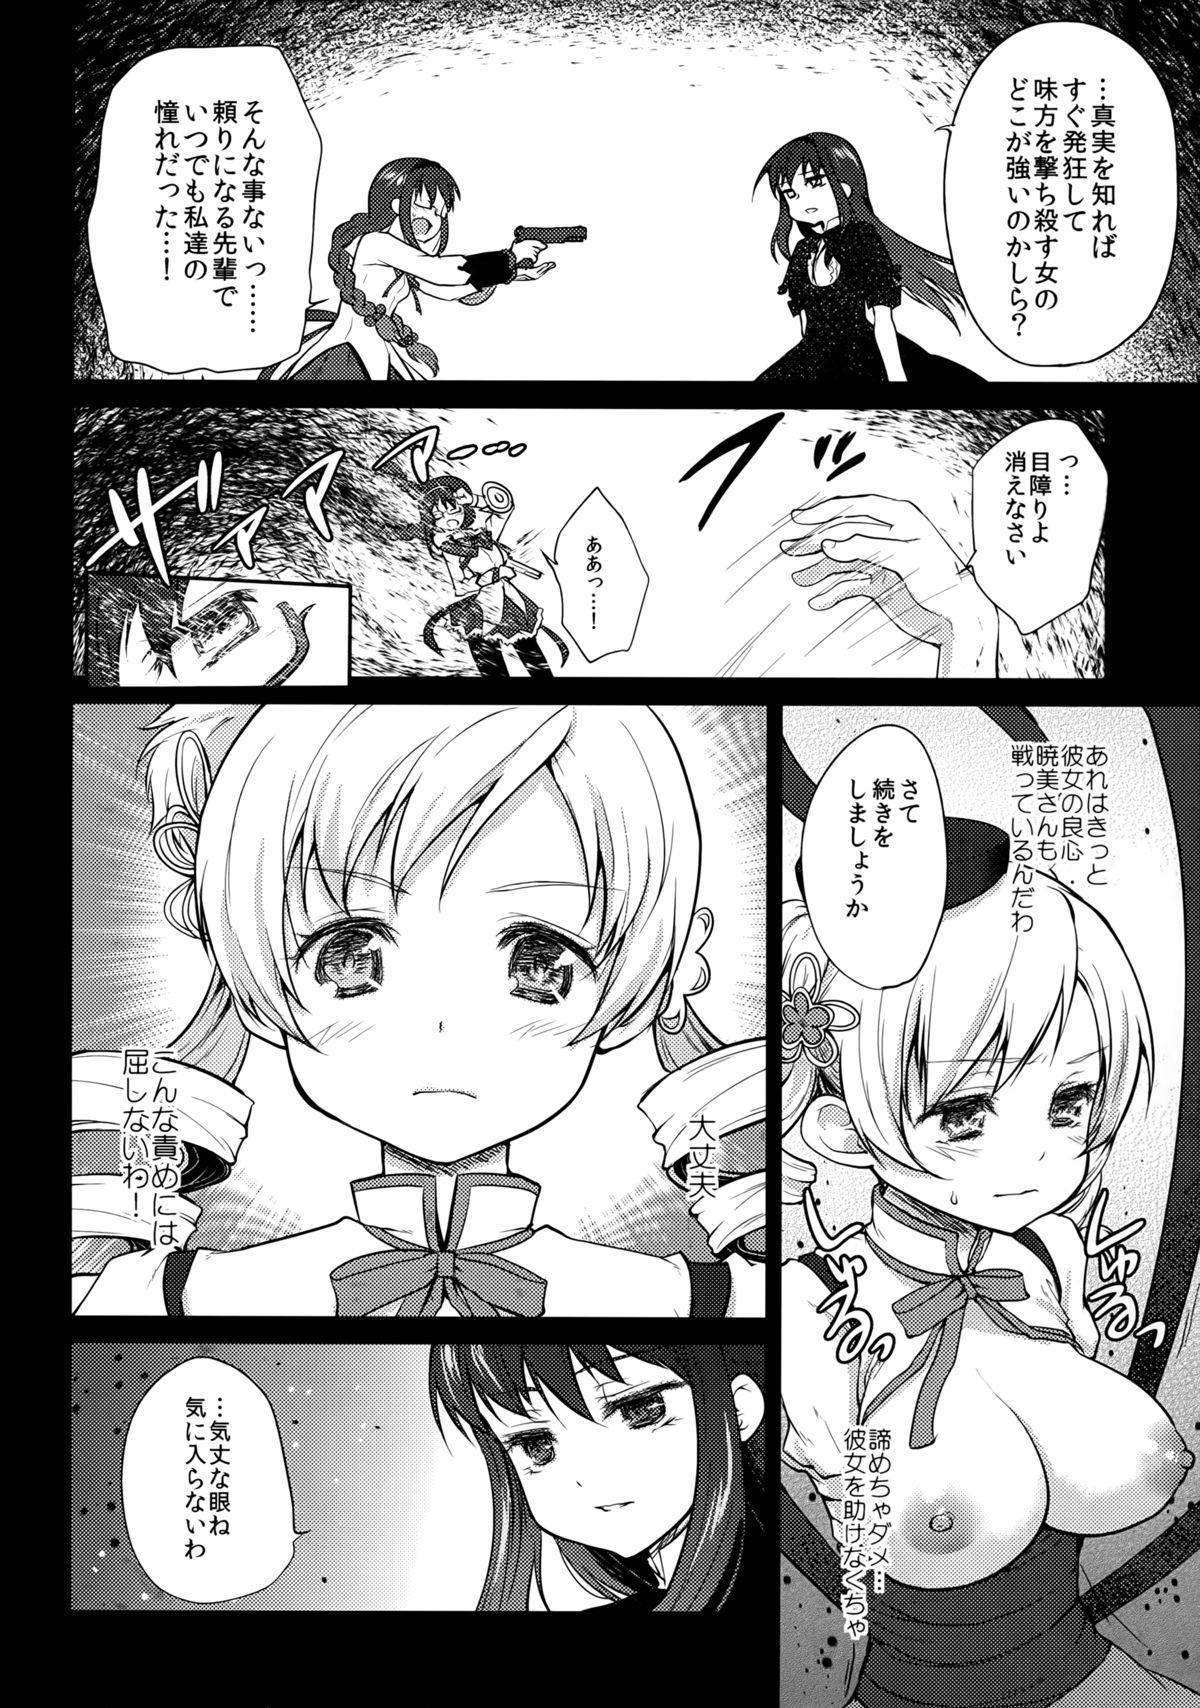 Petite Teenager Hitoribocchi wa Sabishii Mono ne - Puella magi madoka magica Rubia - Page 8